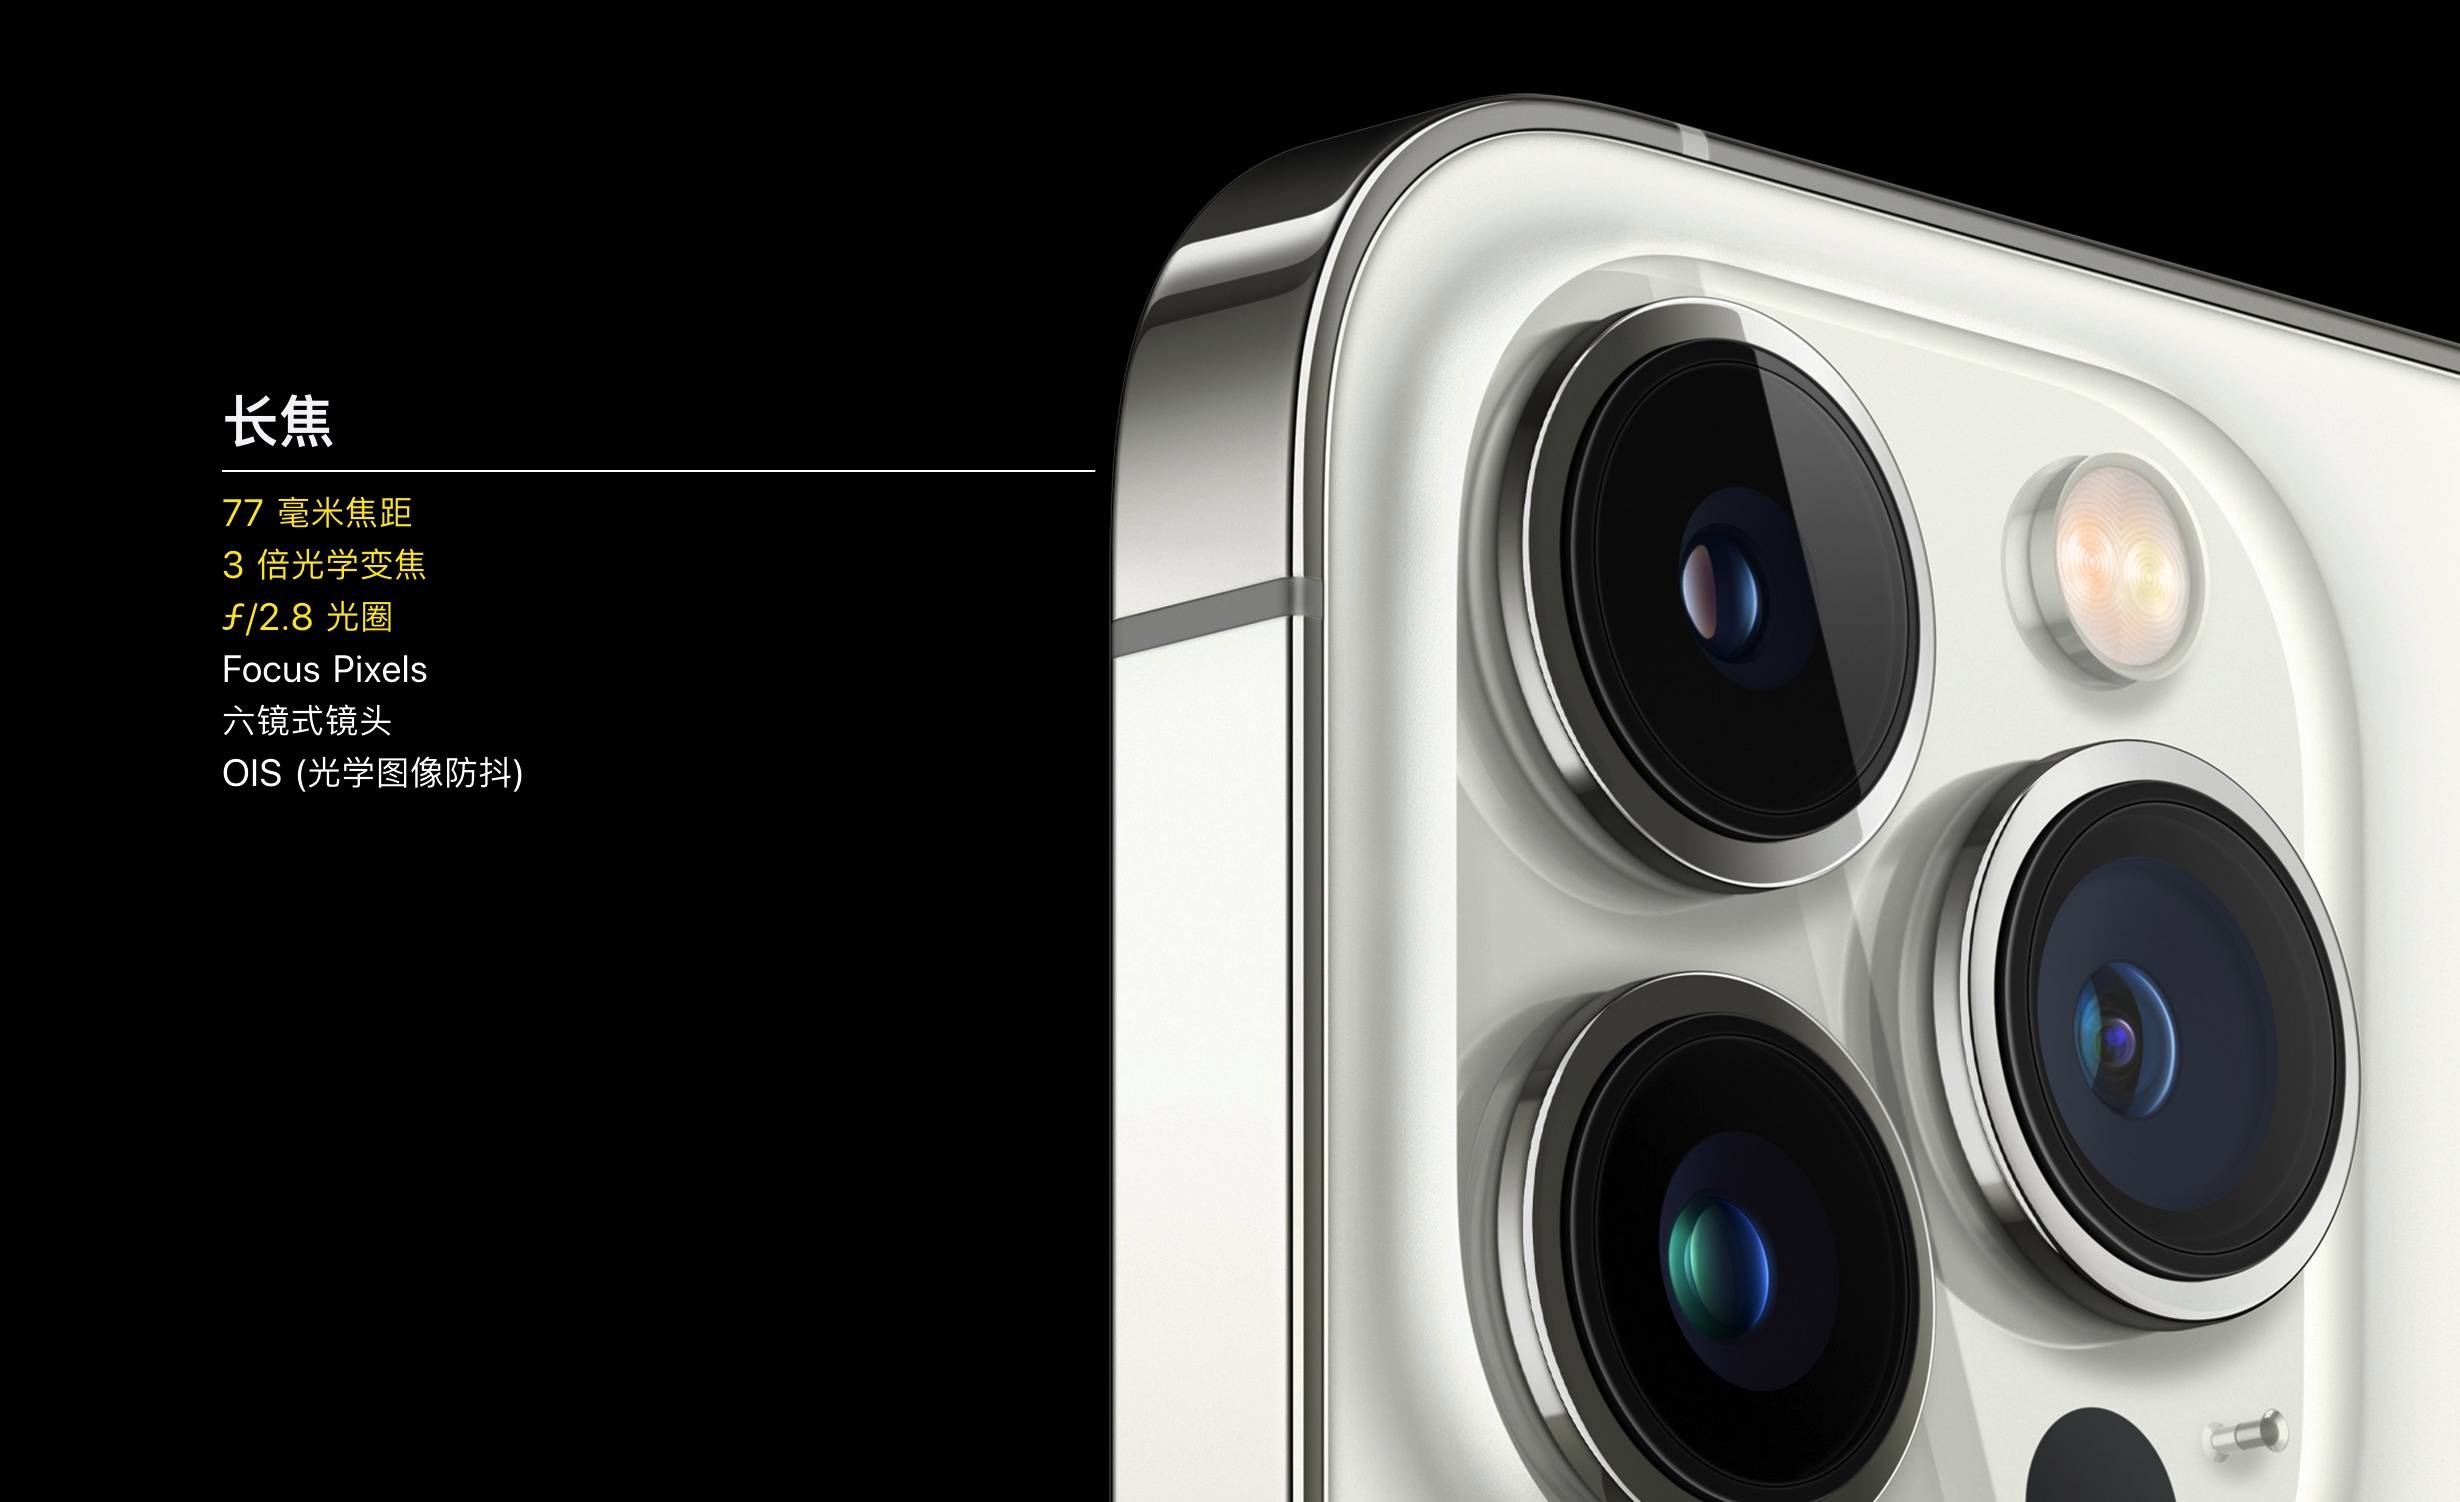 iShot2021 10 18 21.47.18 - Il teleobiettivo dell’iPhone 13 Pro Max si sta restringendo?